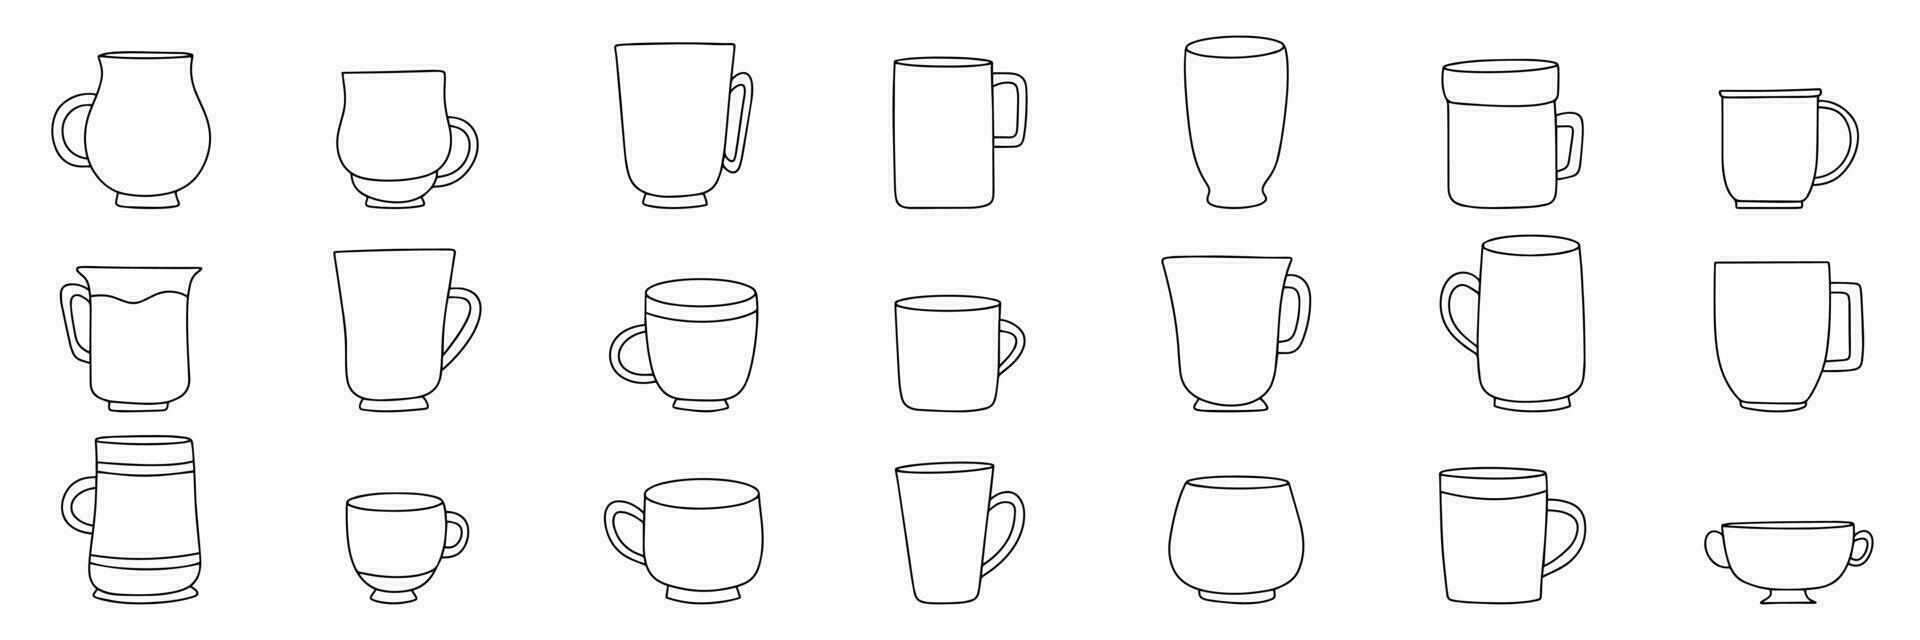 groot reeks van cups in tekening stijl. hand- getrokken kop mok schets. verzameling van mok pictogrammen set. vector illustratie.